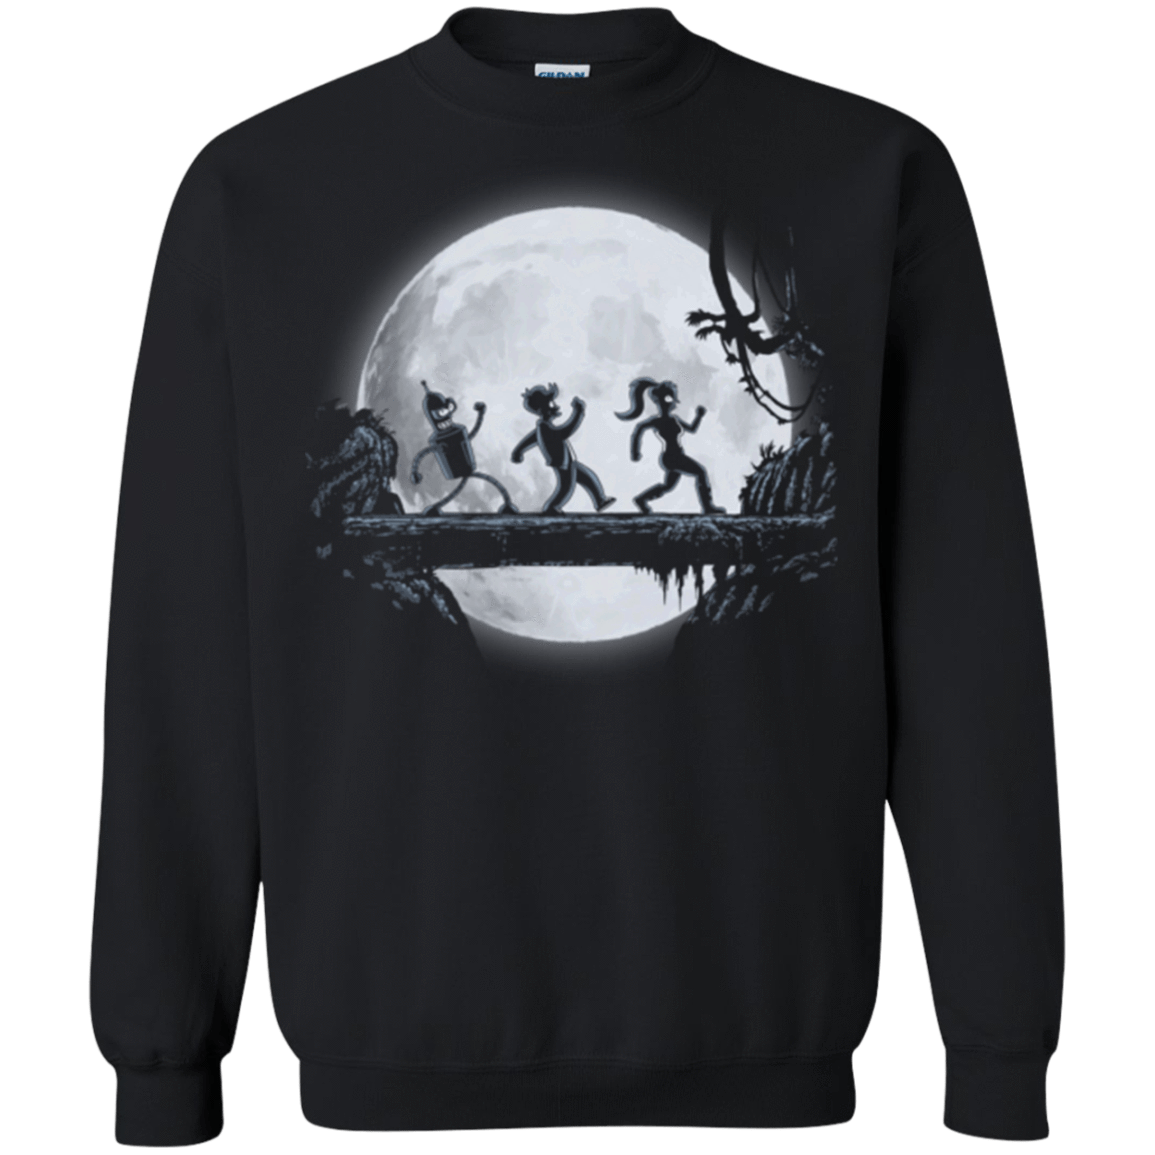 Sweatshirts Black / Small Future Matata Crewneck Sweatshirt